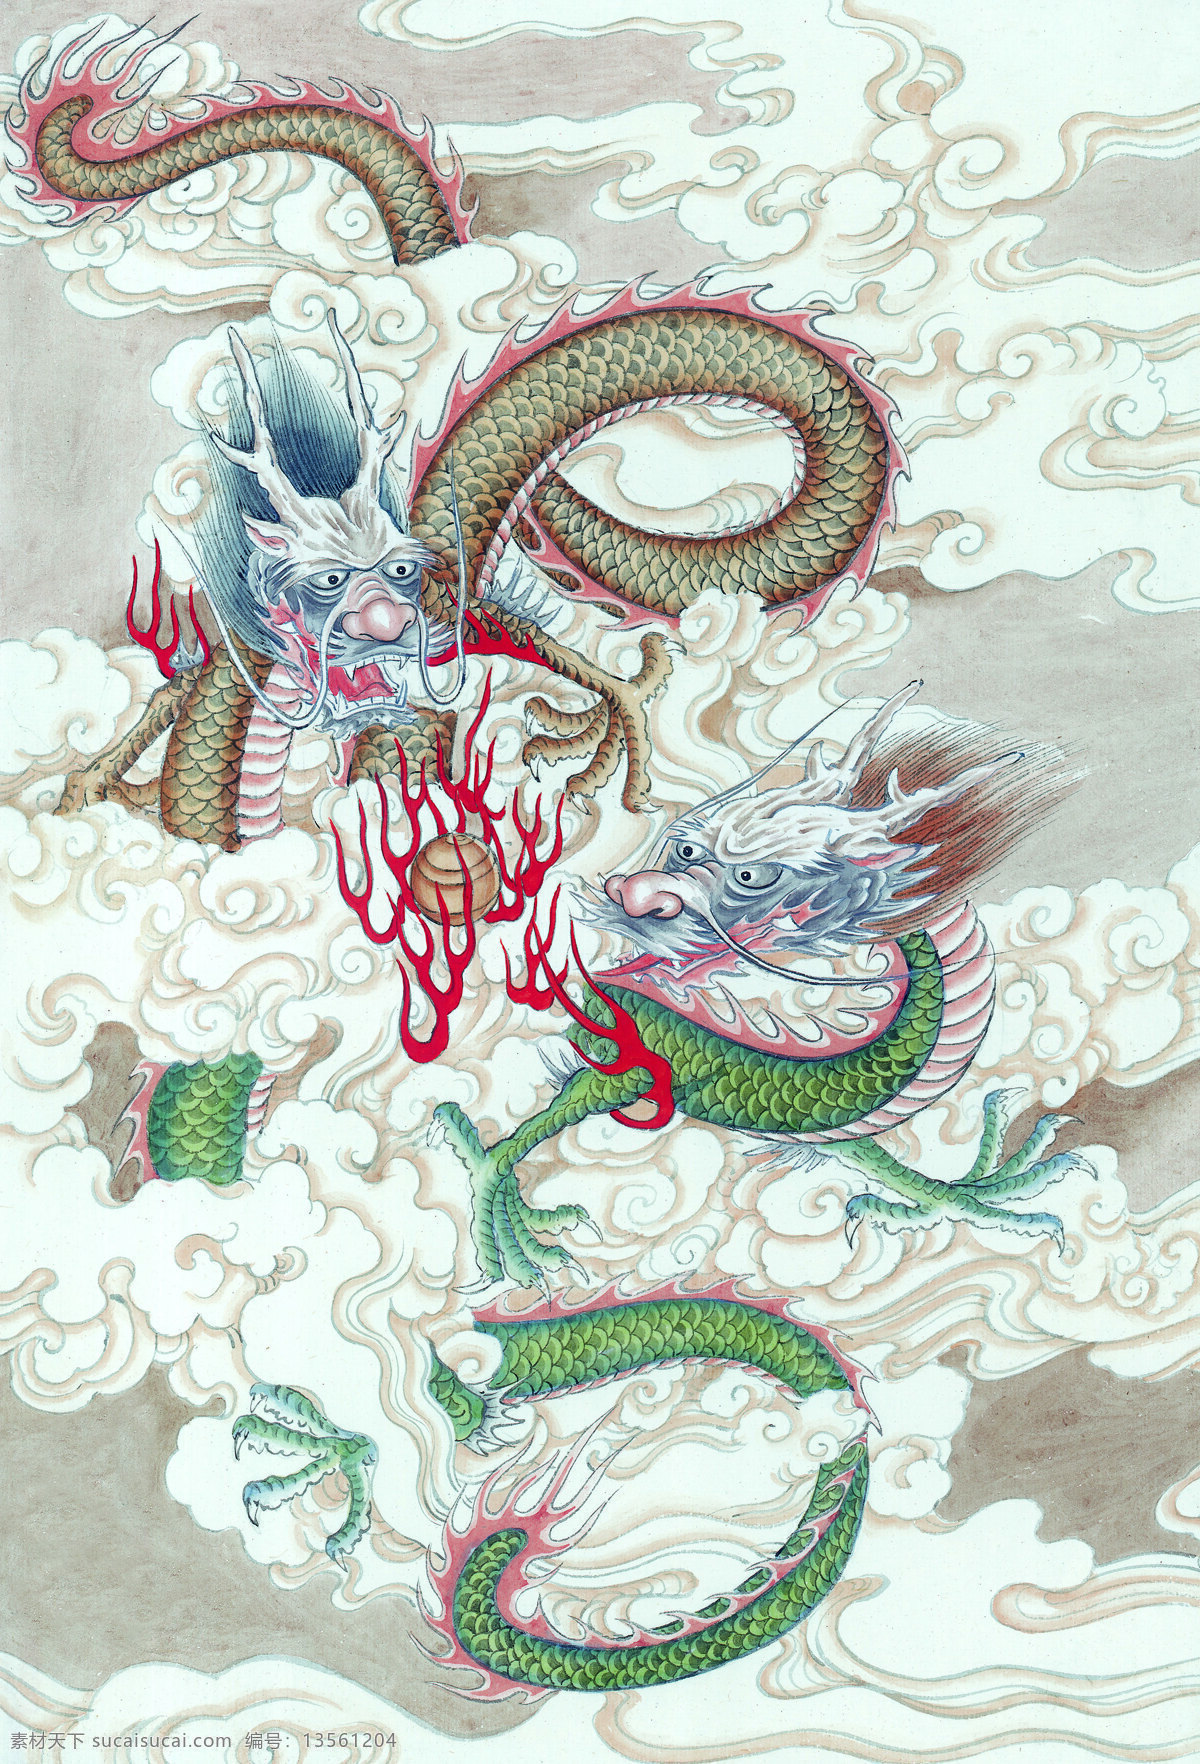 龙 十二生肖 中国画 设计素材 中国画篇 书画美术 白色